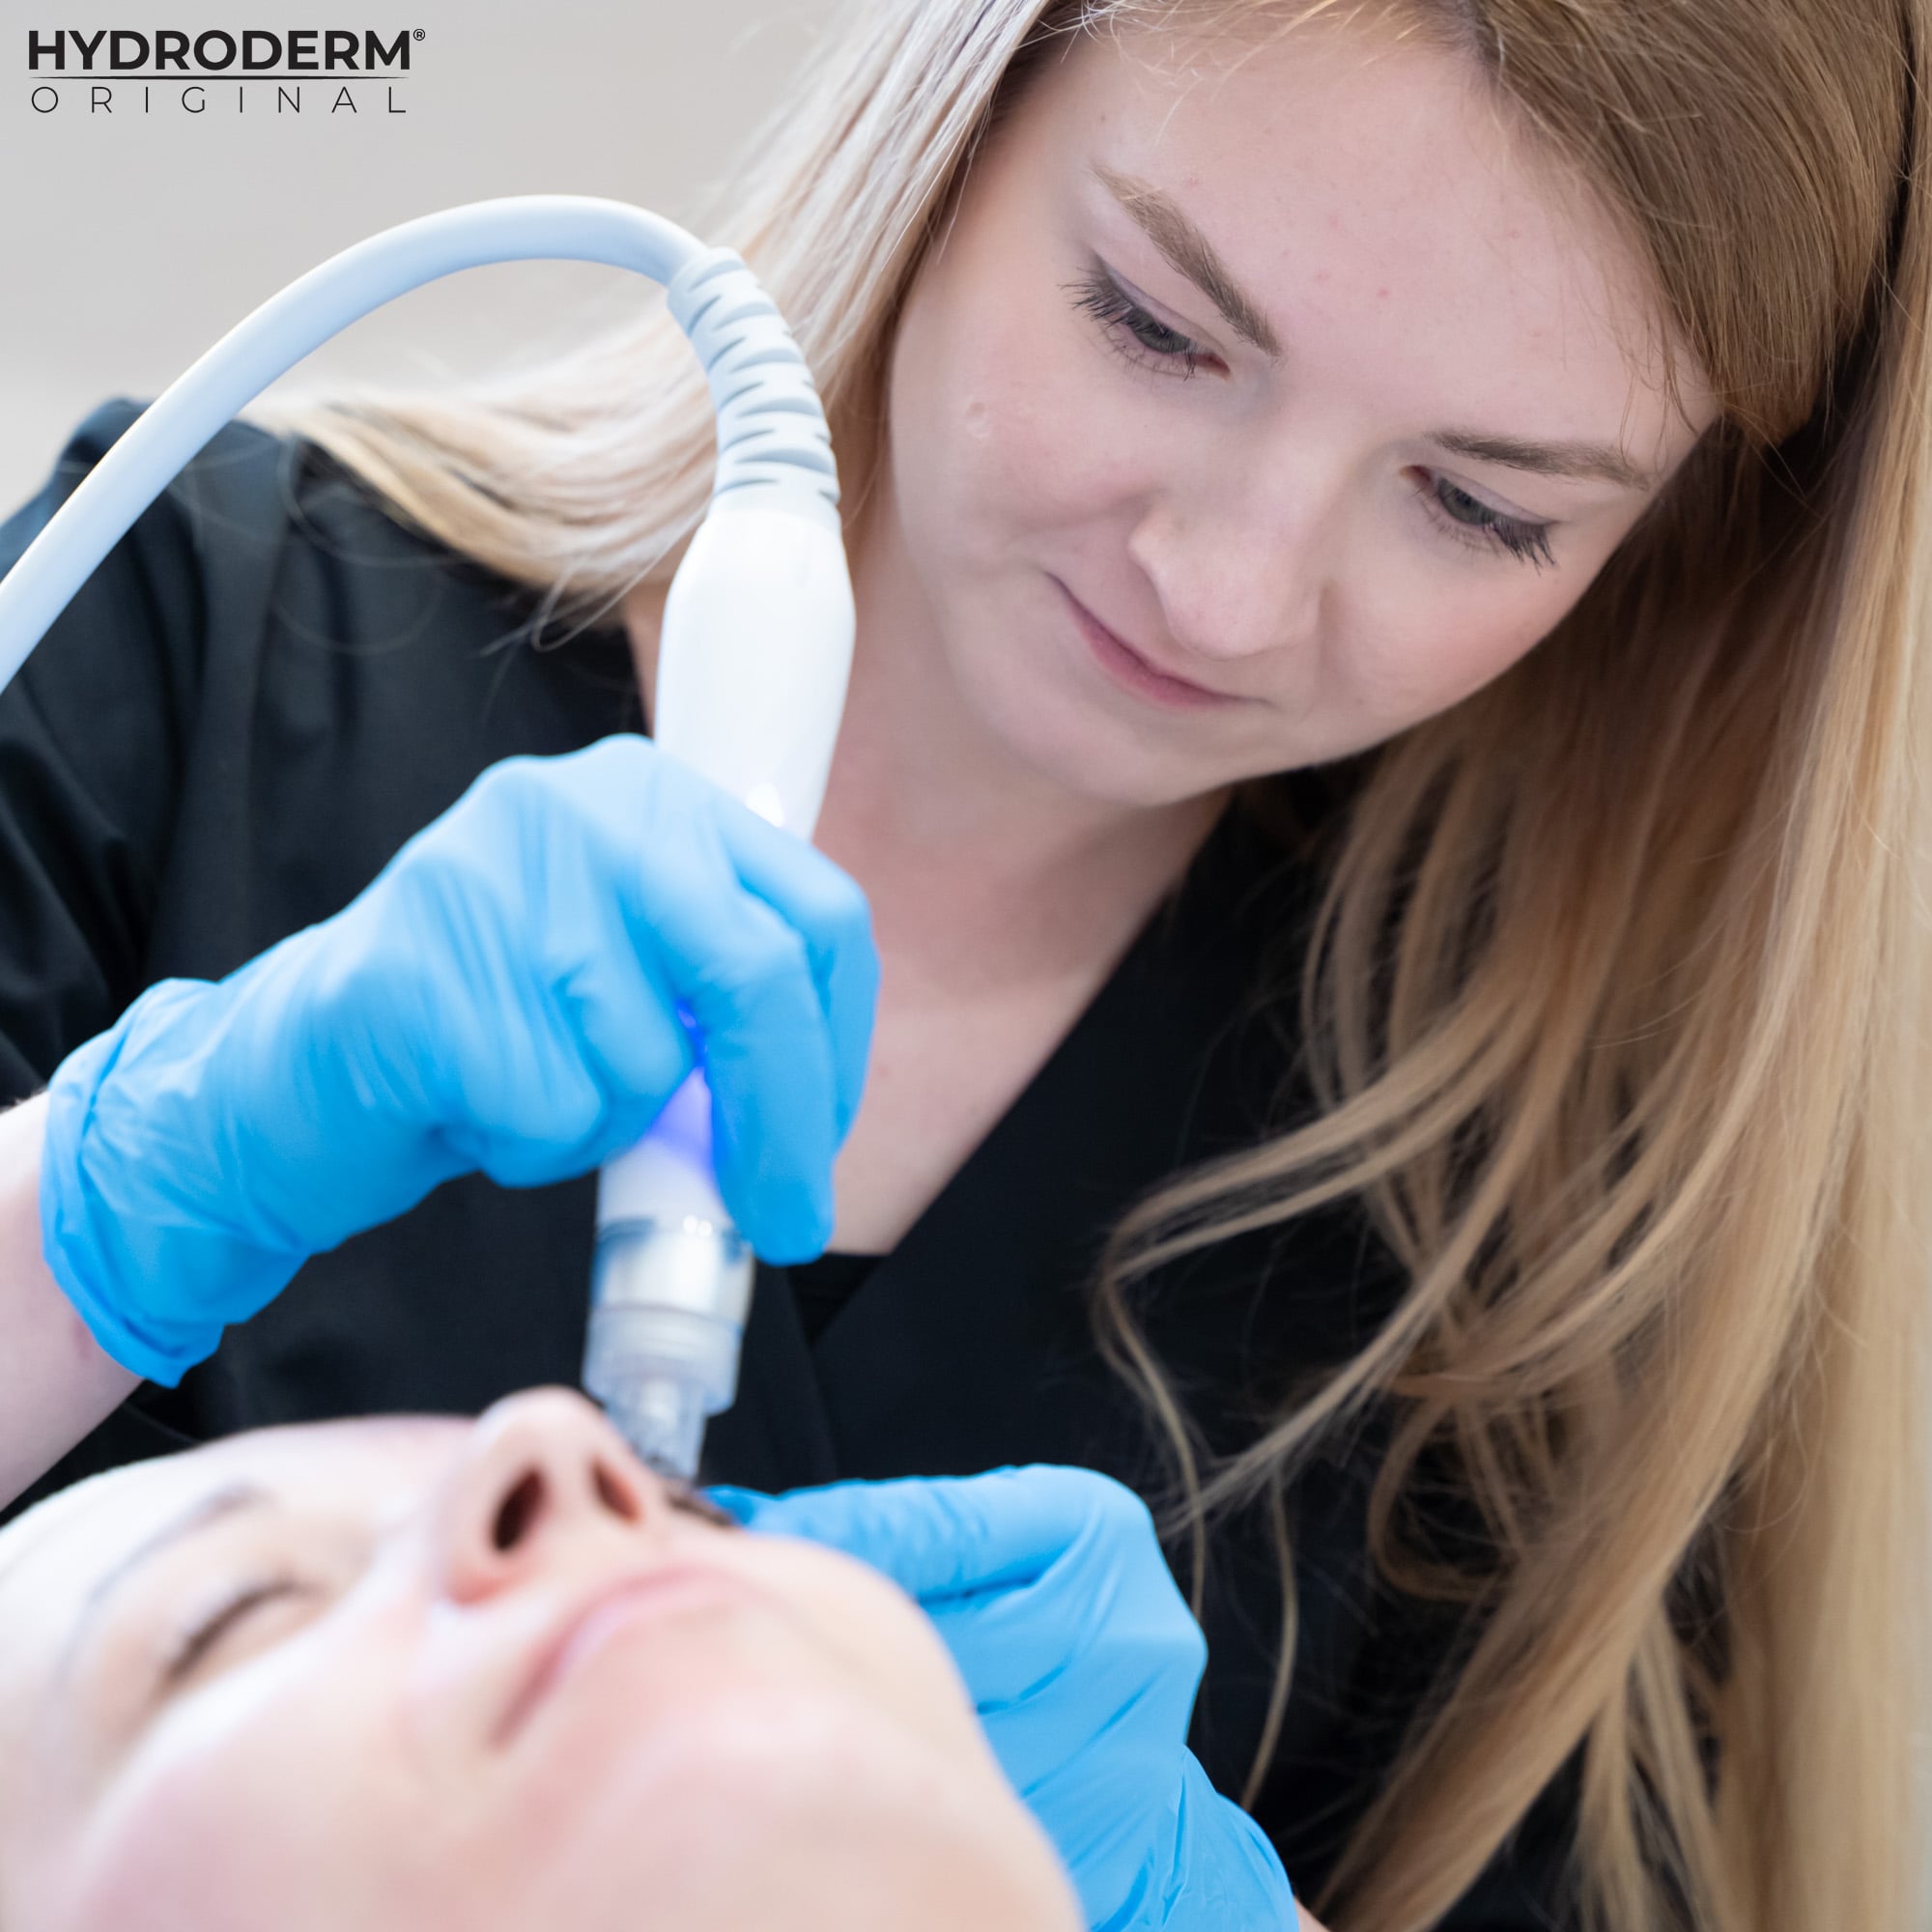 Szkolenie z oczyszczania wodorowego przy użyciu kombajnu Hydroderm 9w1 Original obejmuje praktyczne sesje pod okiem kosmetologa